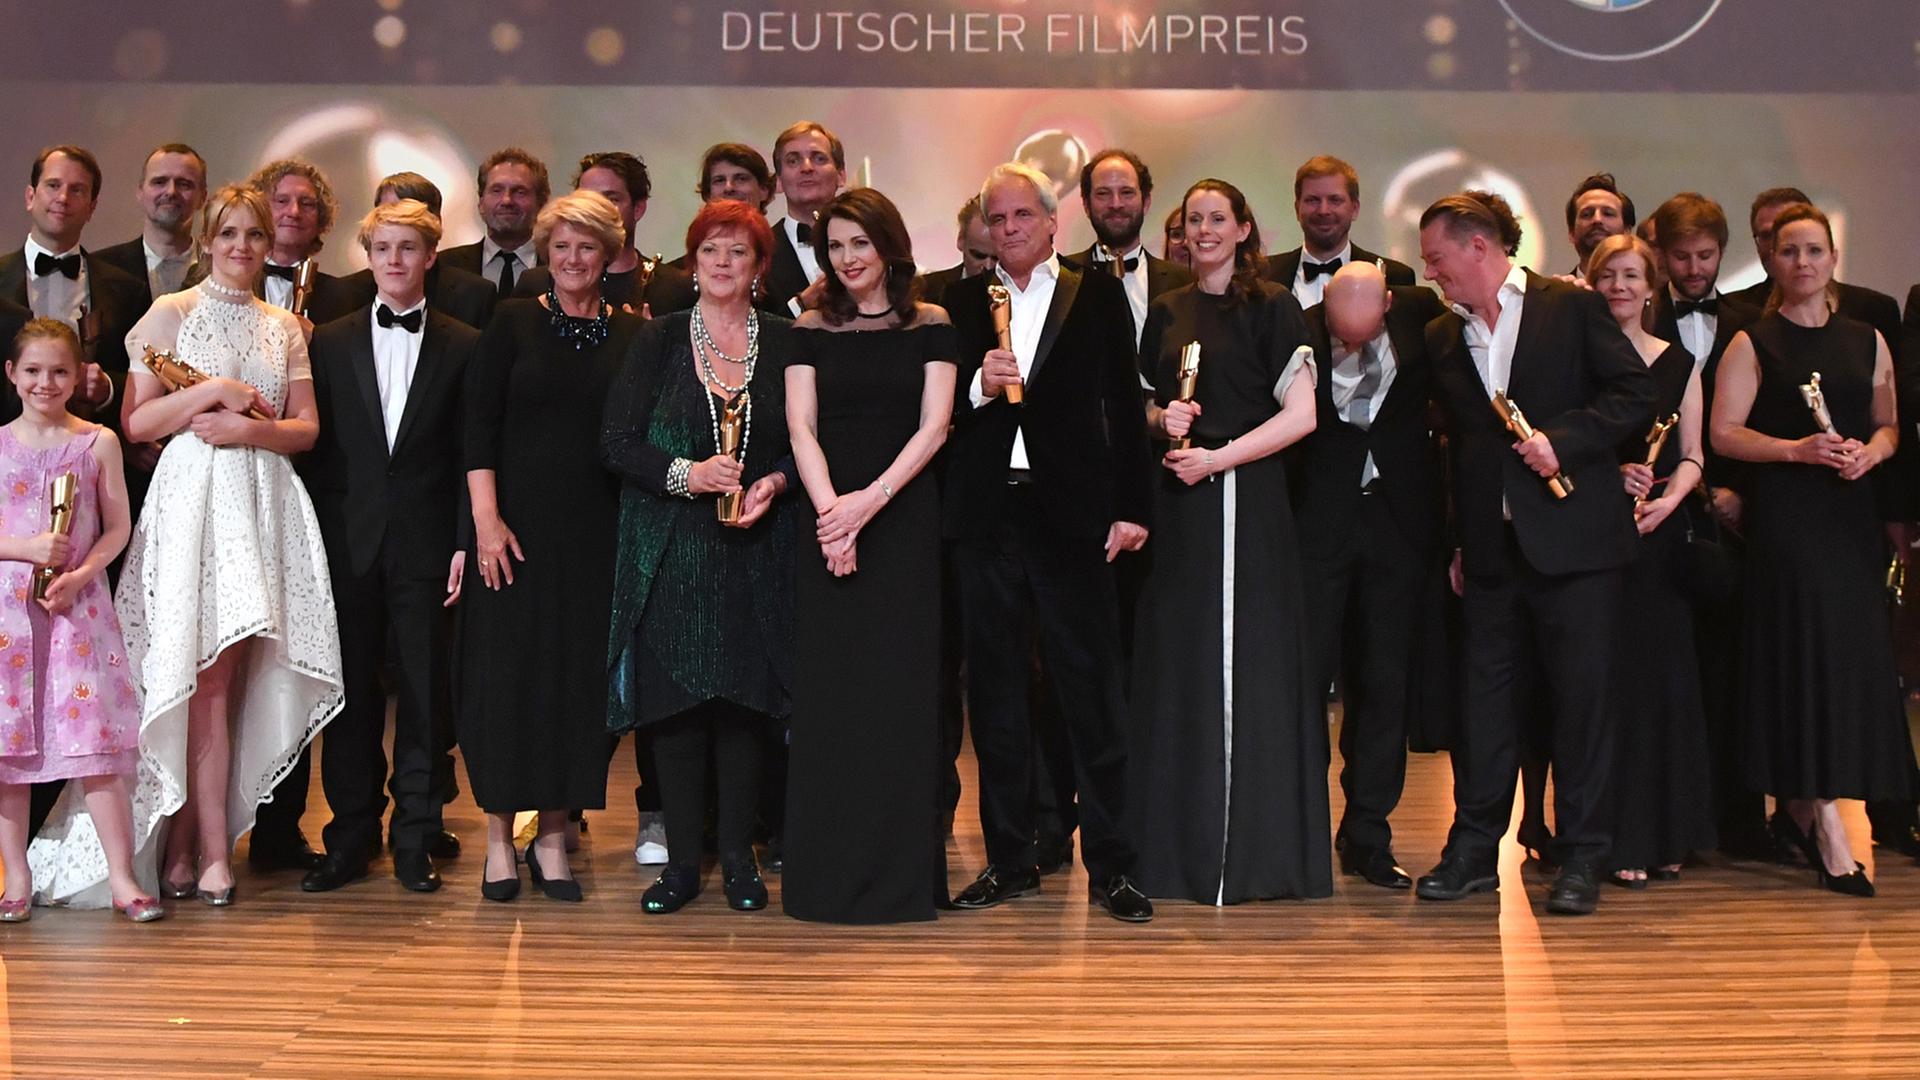 Preisträger stehen bei der Verleihung des 66. Deutschen Filmpreises, der Lola, am 27.05.2016 in Berlin auf der Bühne.